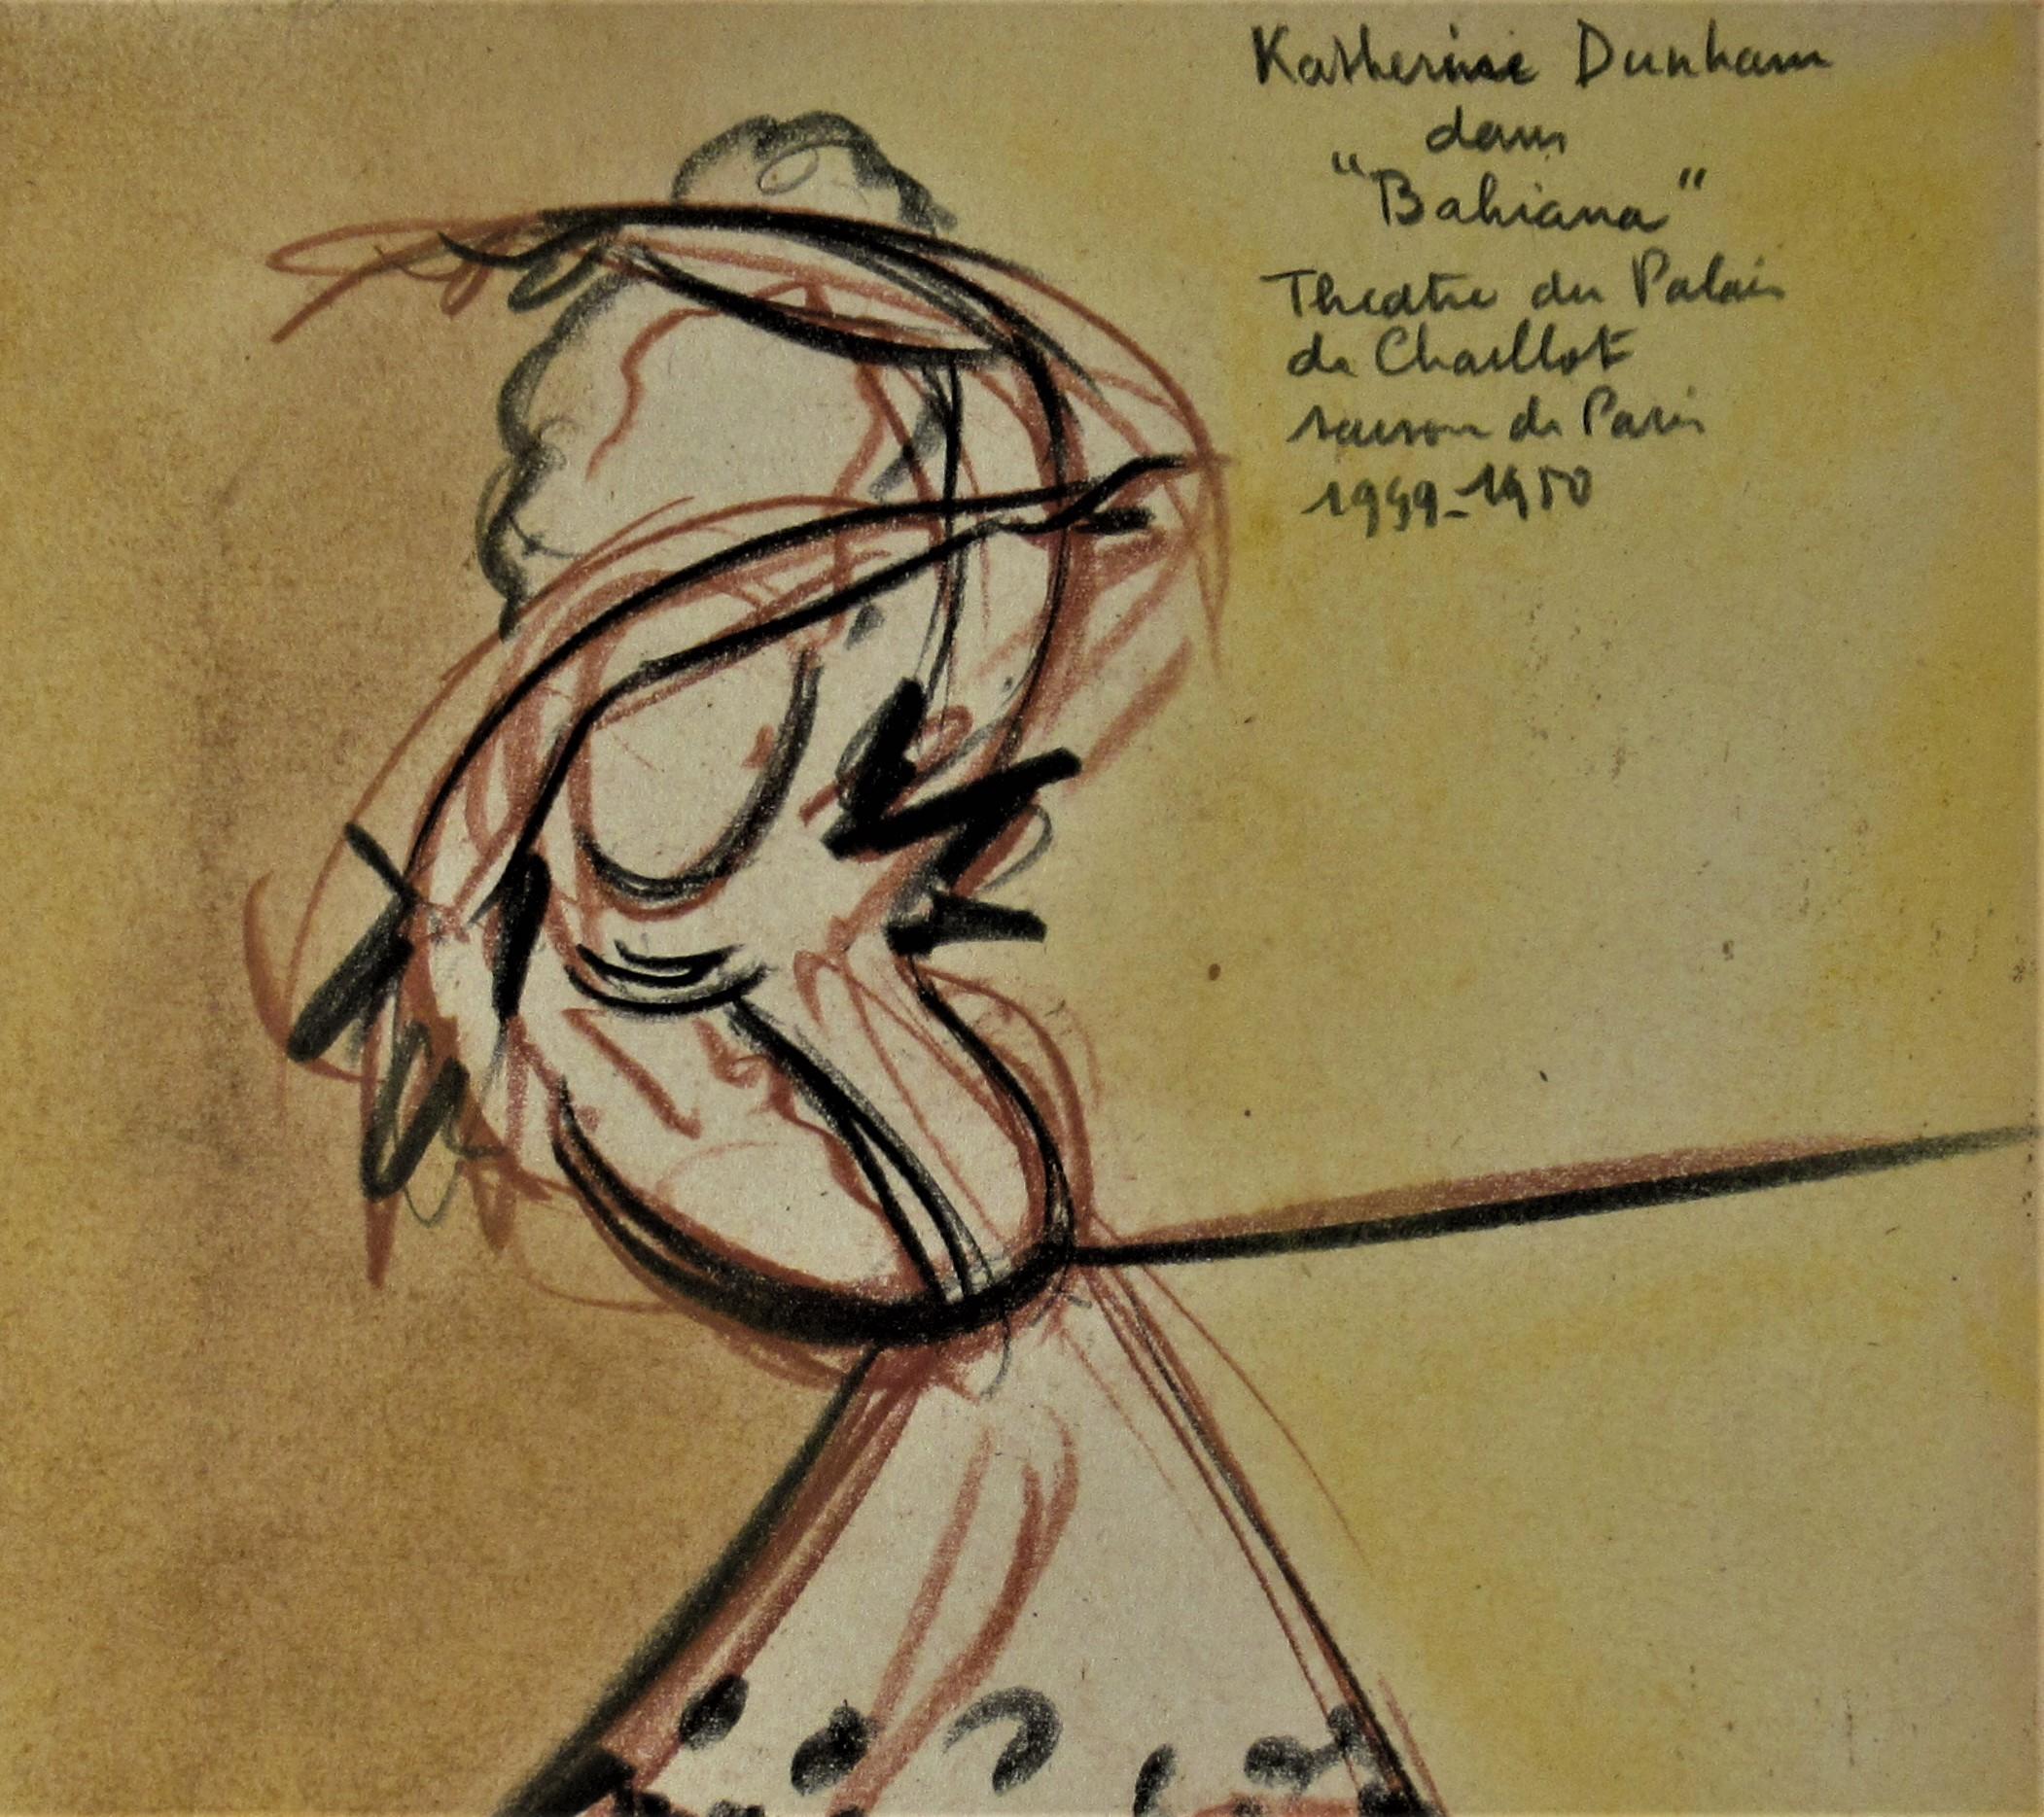 Katherine Dunham dans Bahiana, Theatre du Palais de Chaillot Saison de Paris - Art by Jean Target